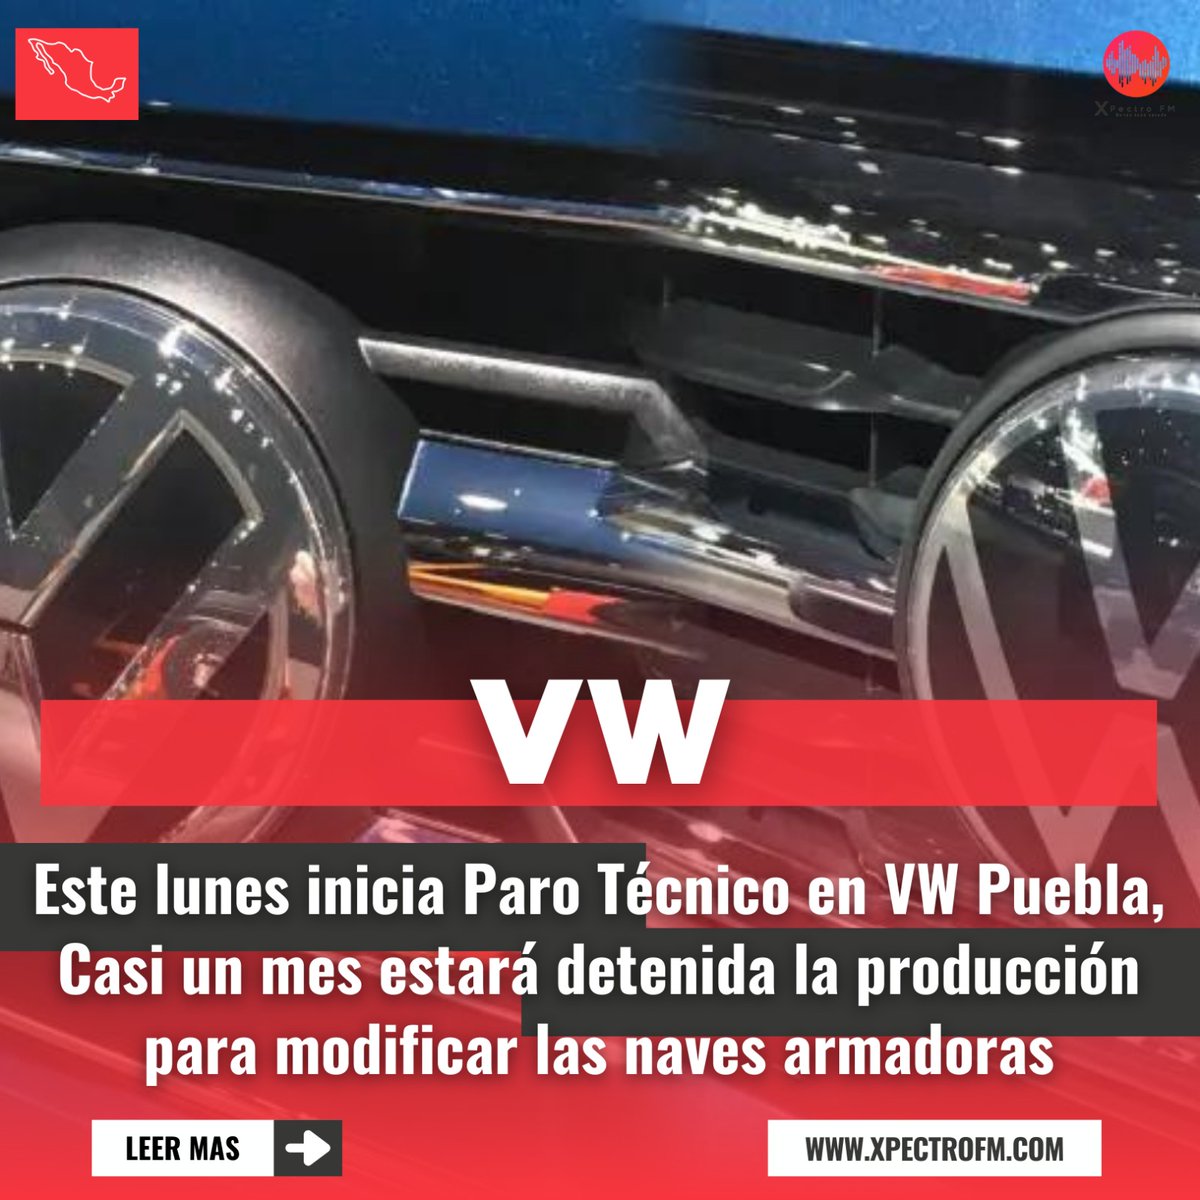 El secretario general del Sindicato Independiente de Trabajadores de Volkswagen de México (Sitiaw), Hugo Tlalpan Luna, informó que la empresa realizará un paro técnico del 15 de abril al 14 de mayo para modificar sus instalaciones de armado de vehículos.
@Volkswagen_MX